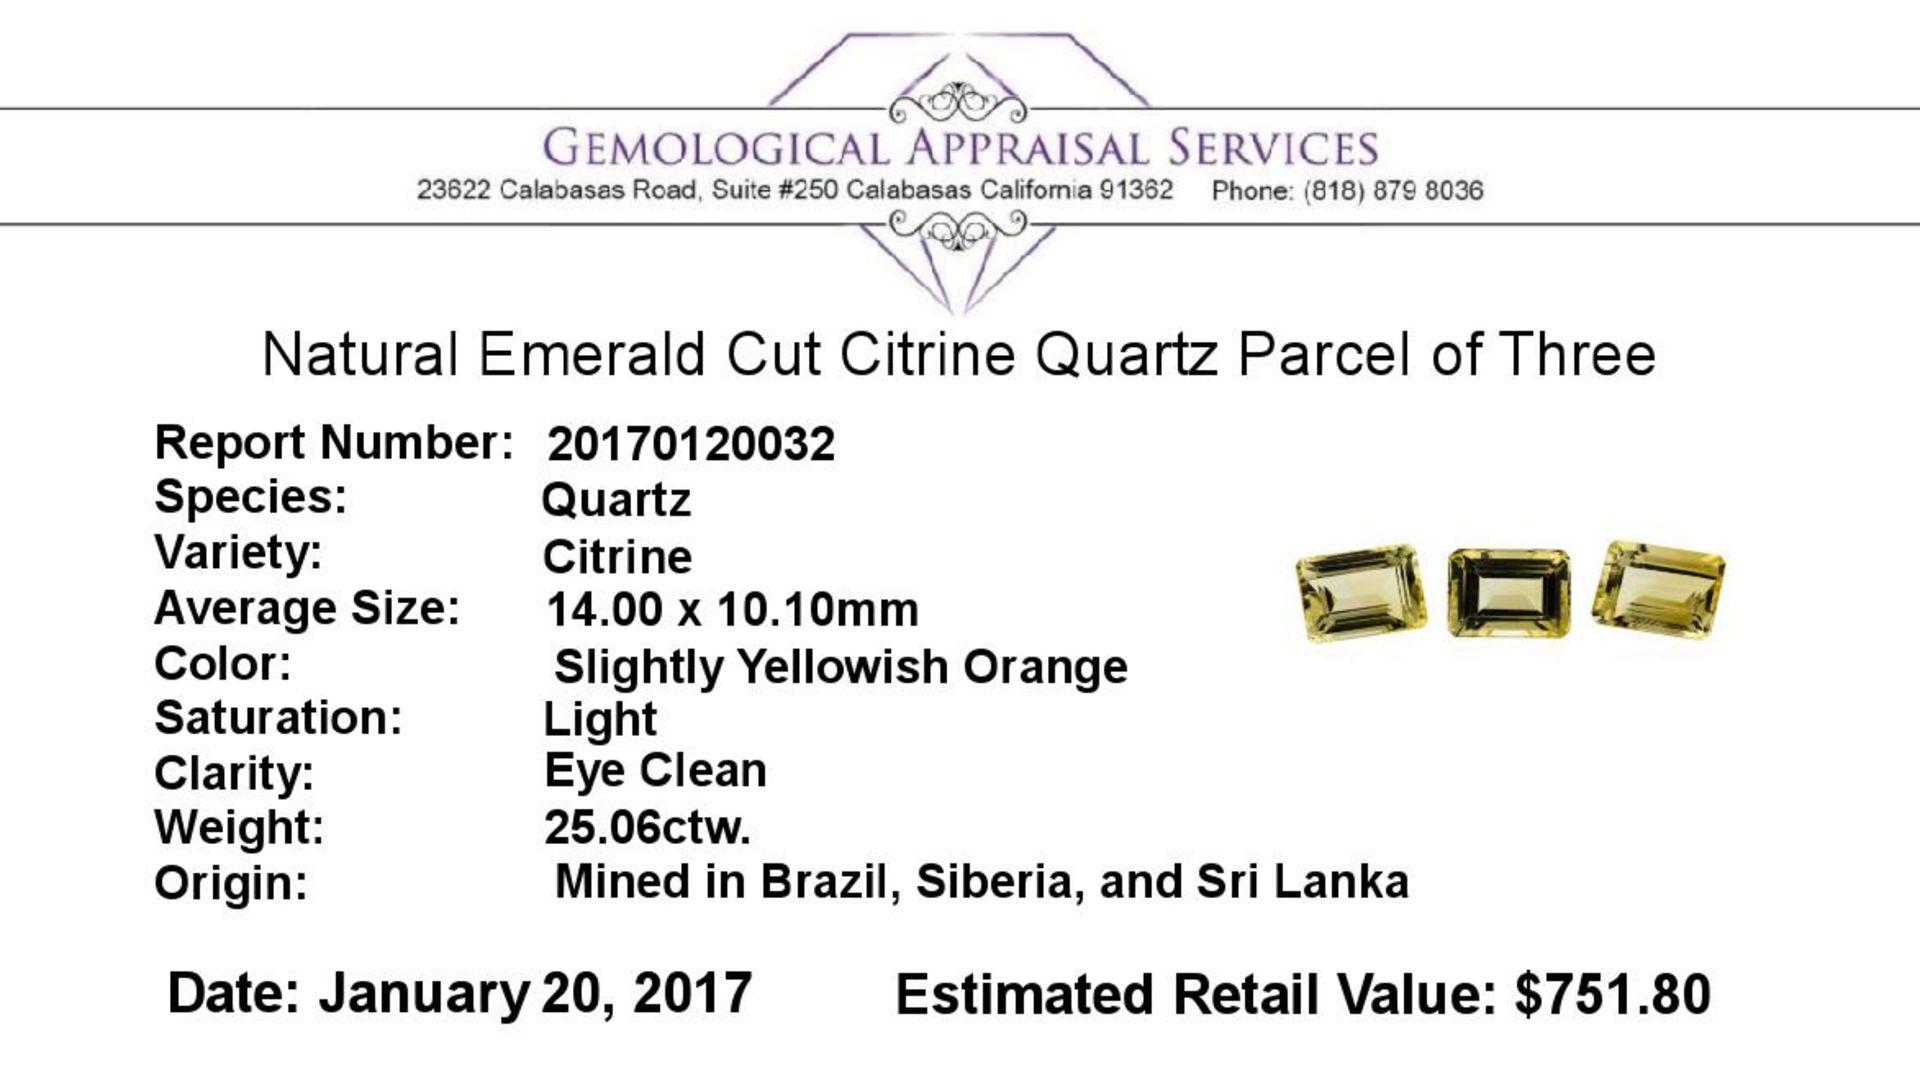 25.06 ctw.Natural Emerald Cut Citrine Quartz Parcel of Three - Image 3 of 3